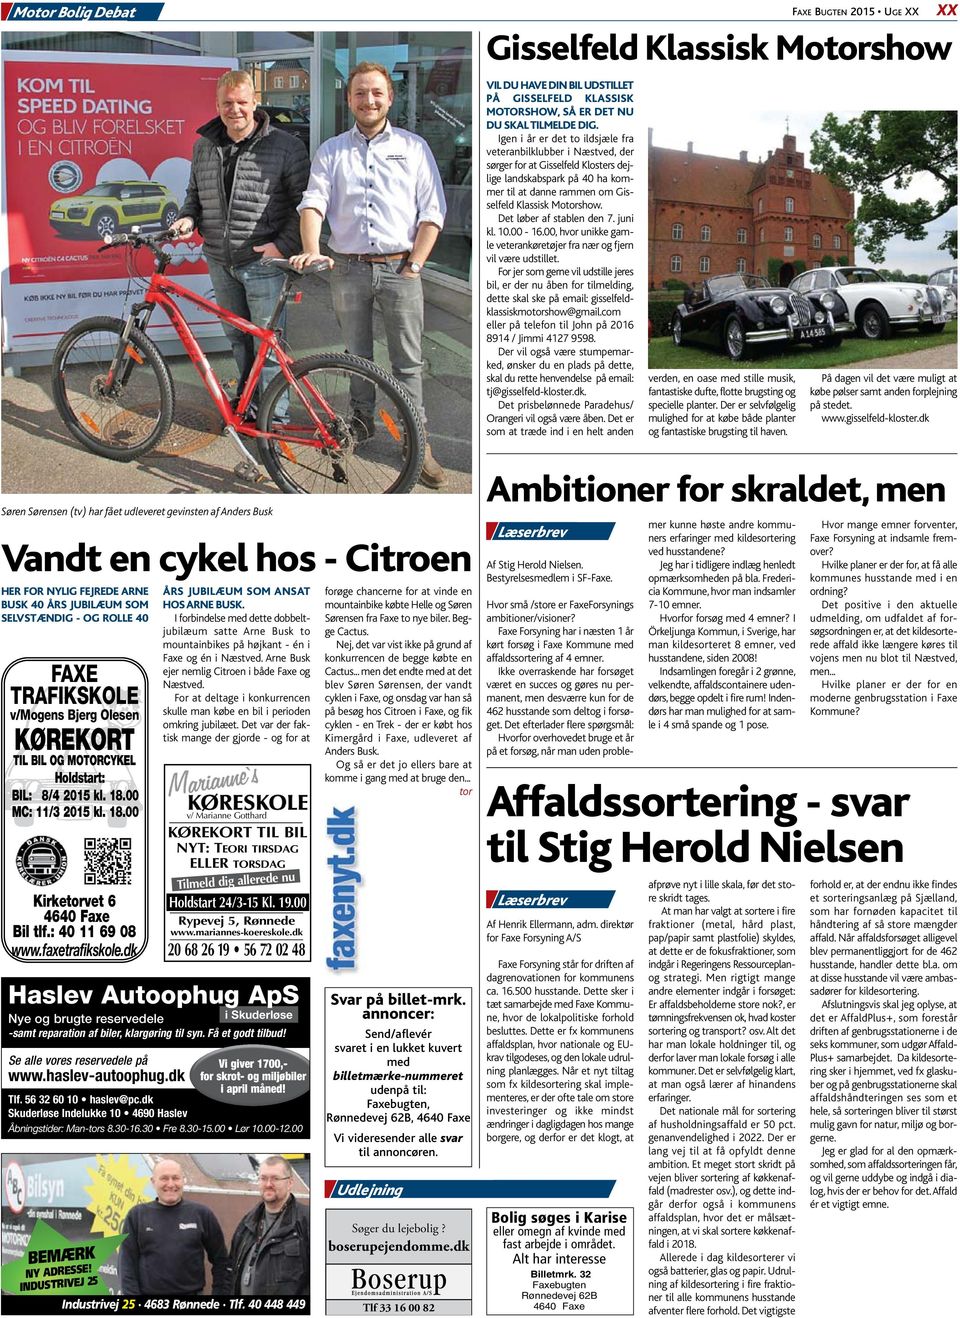 I forbindelse med dette dobbeltjubilæum satte Arne Busk to mountainbikes på højkant - én i Faxe og én i Næstved. Arne Busk ejer nemlig Citroen i både Faxe og Næstved.